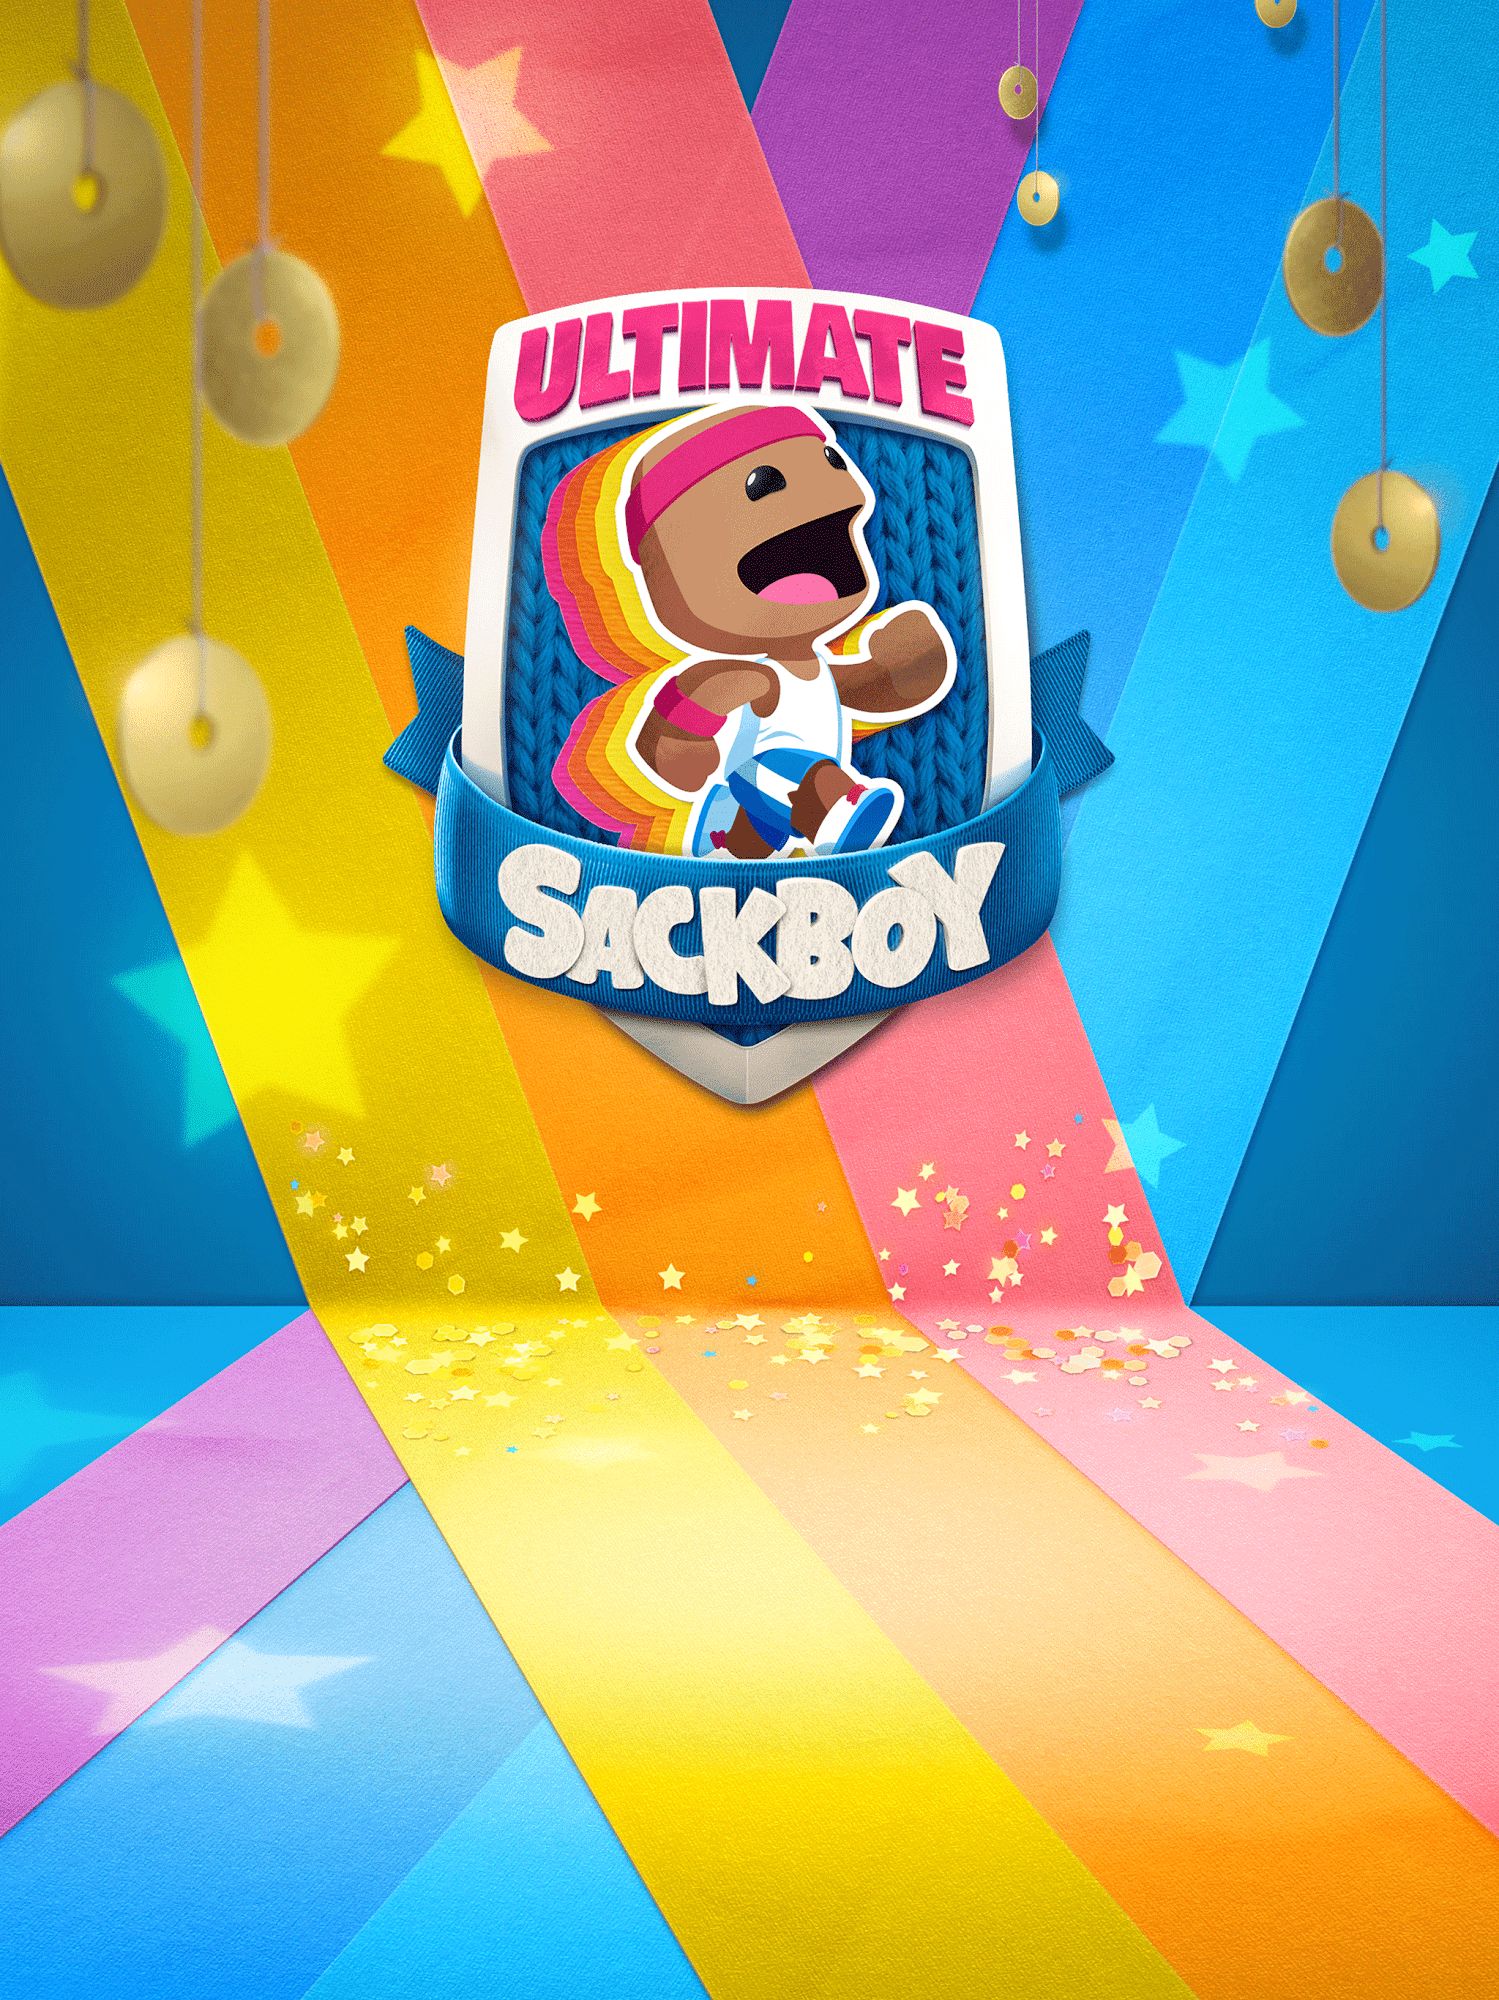 Télécharger Ultimate Sackboy pour Android gratuit.